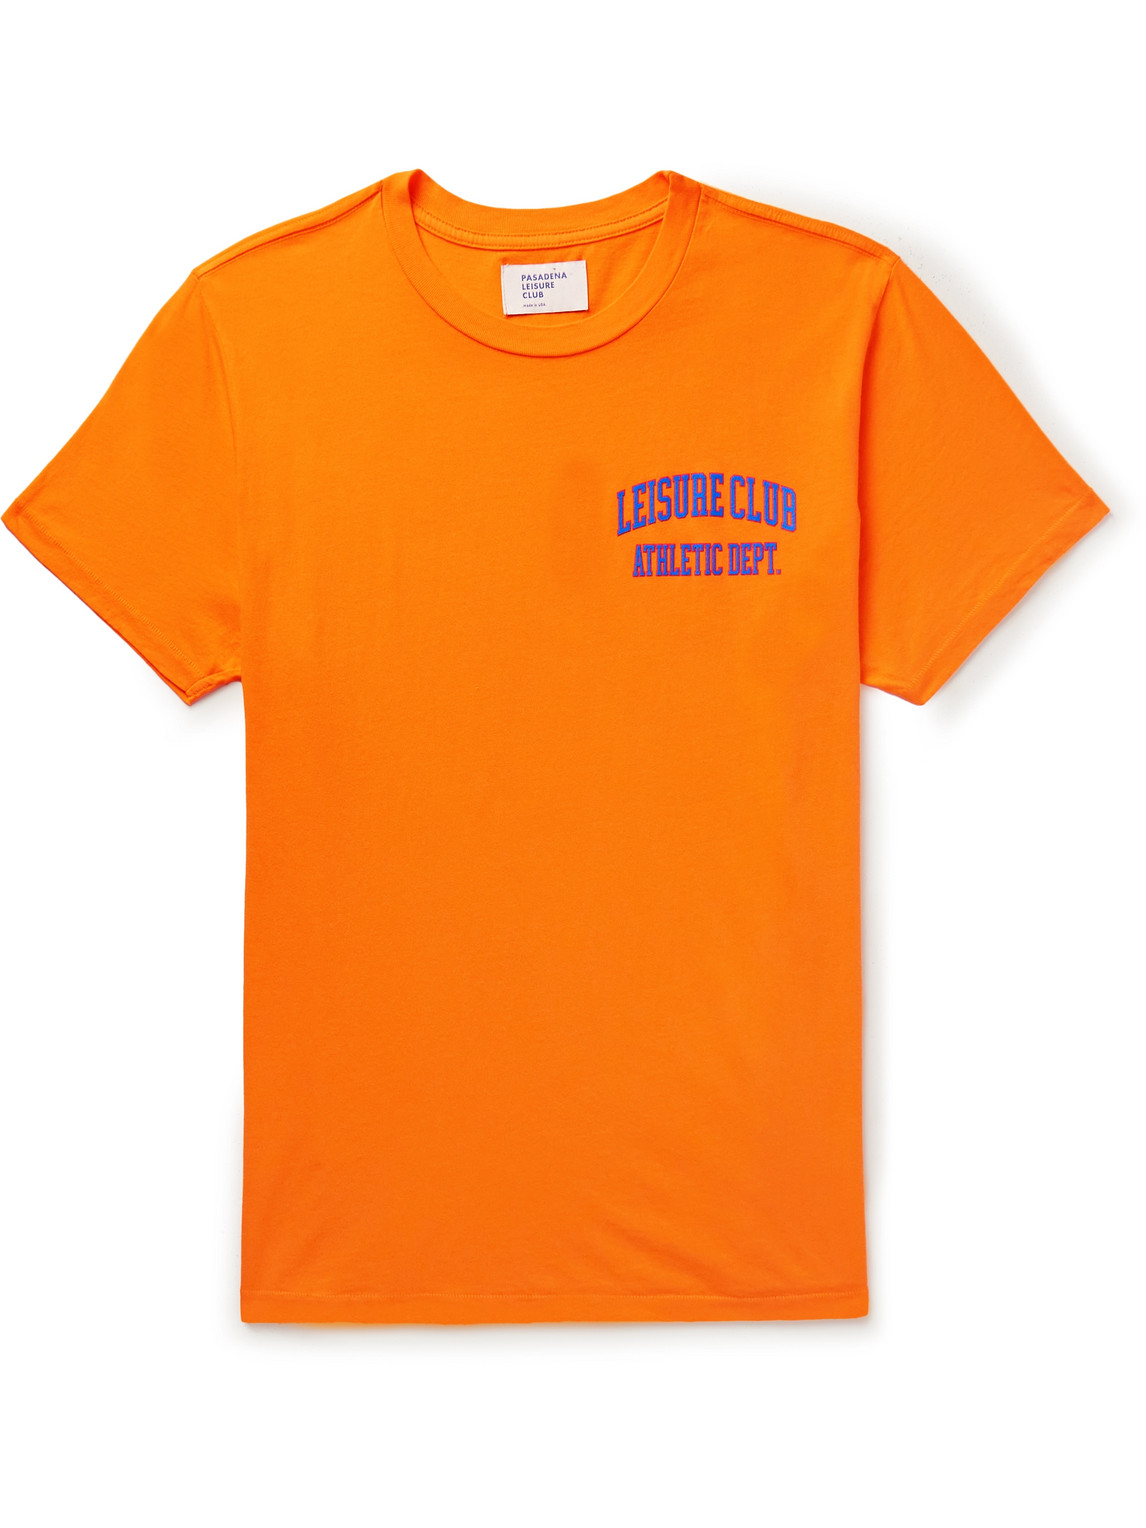 Pasadena Leisure Club Athletic Dept. Logo-print Garment-dyed Cotton-jersey T-shirt In Orange